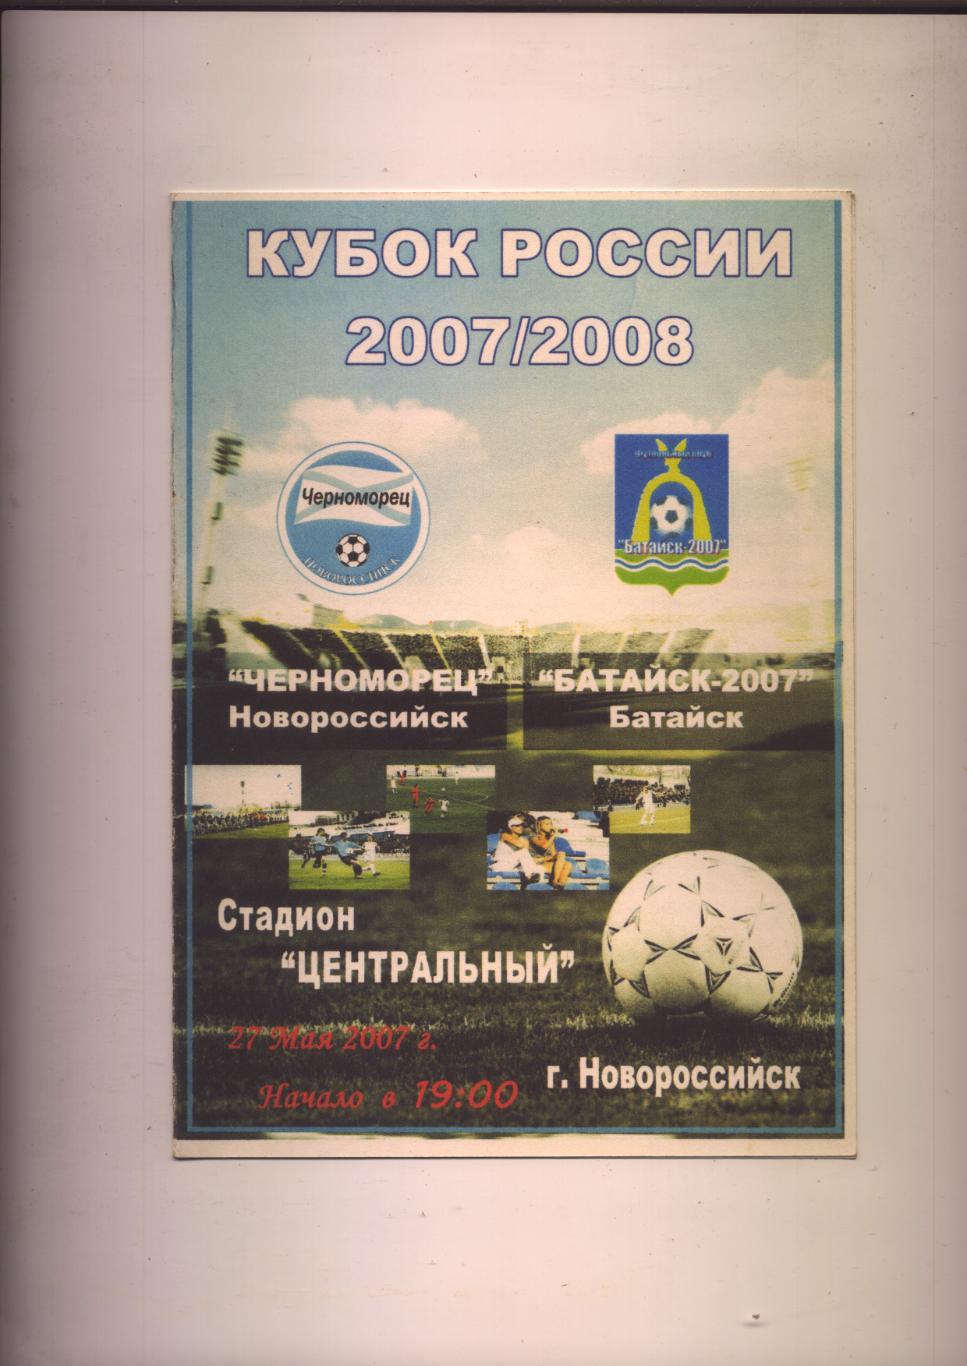 Кубок России Черноморец Новороссийск - Батайск-2007 Батайск 27 05 2007 г.